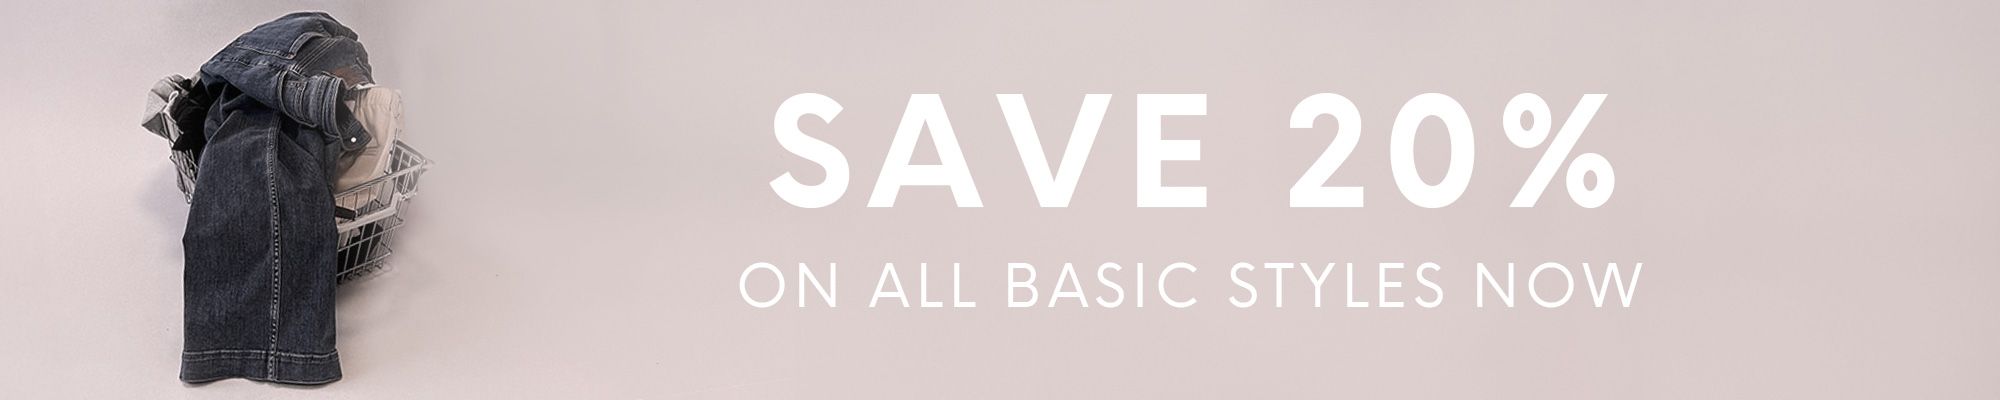 Basic styles at 20% off at Byflou.com